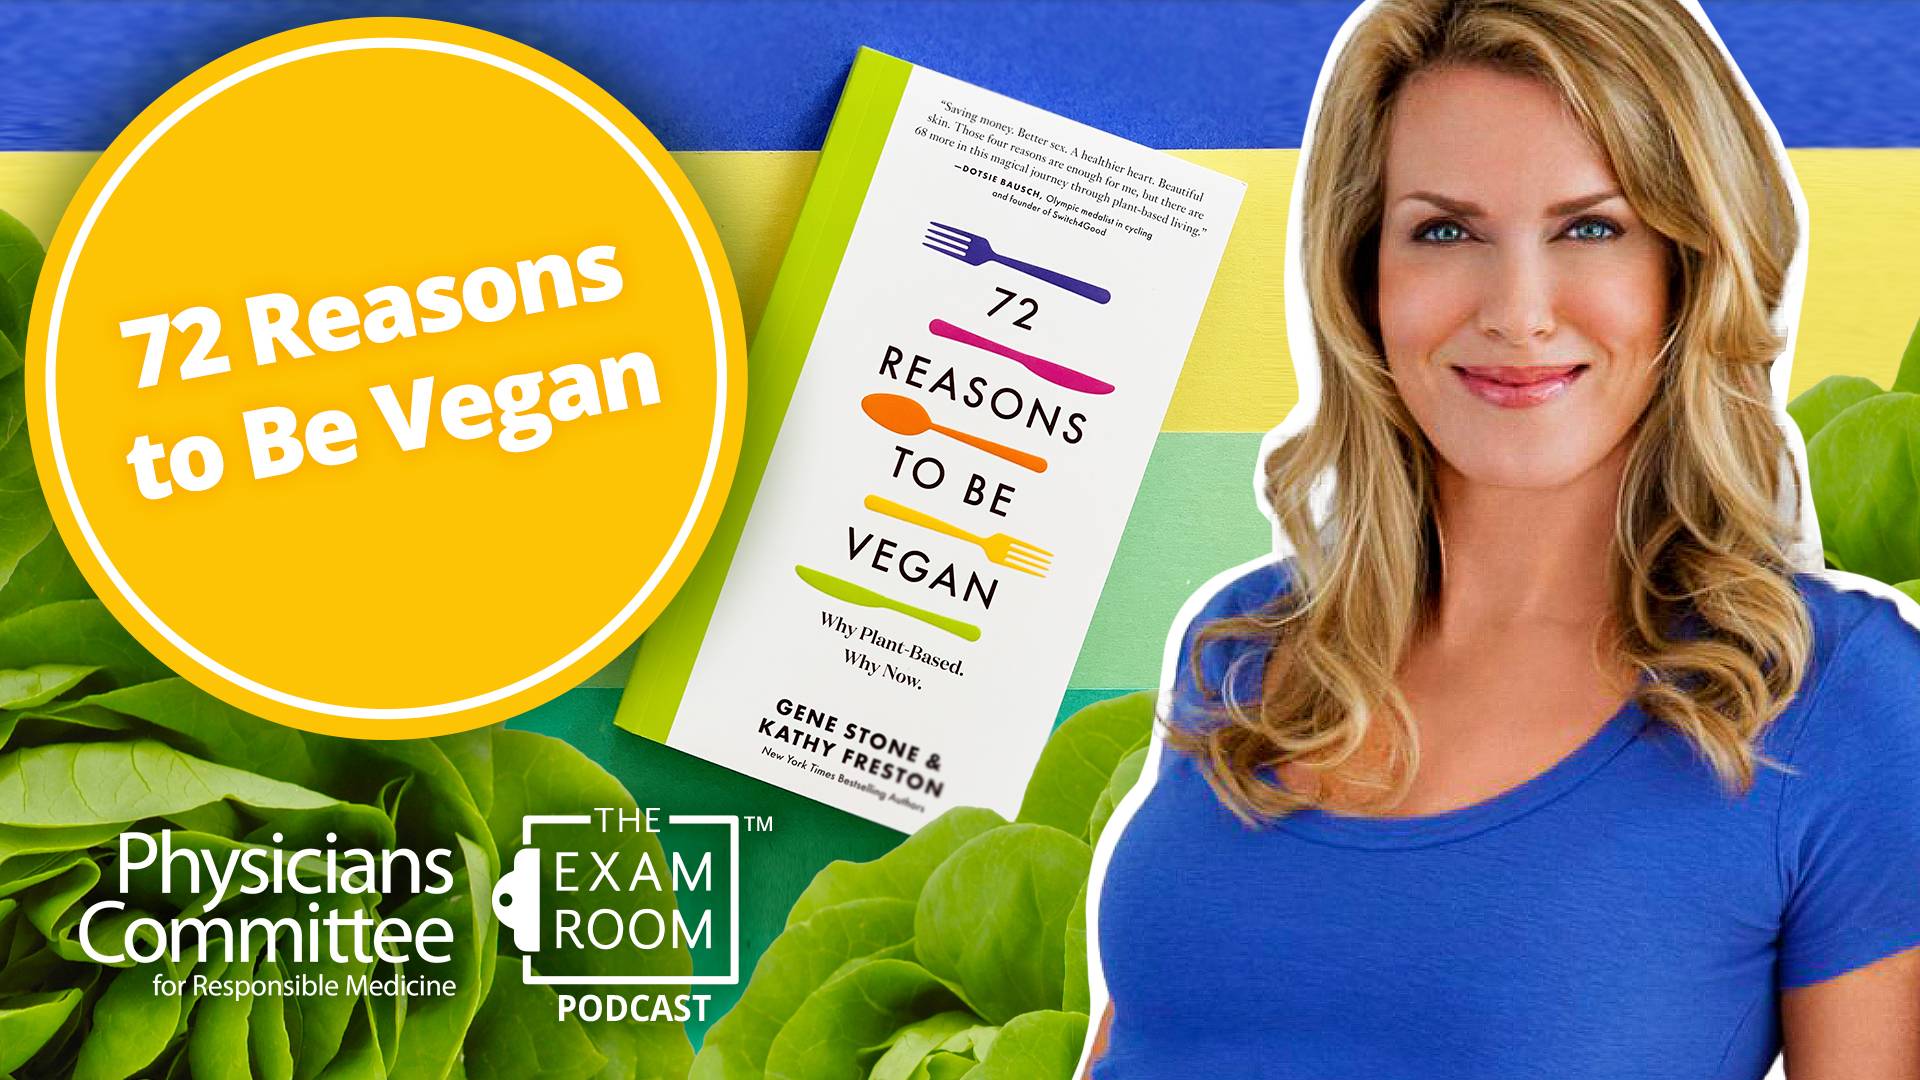 72 Reasons to Be Vegan With Kathy Freston